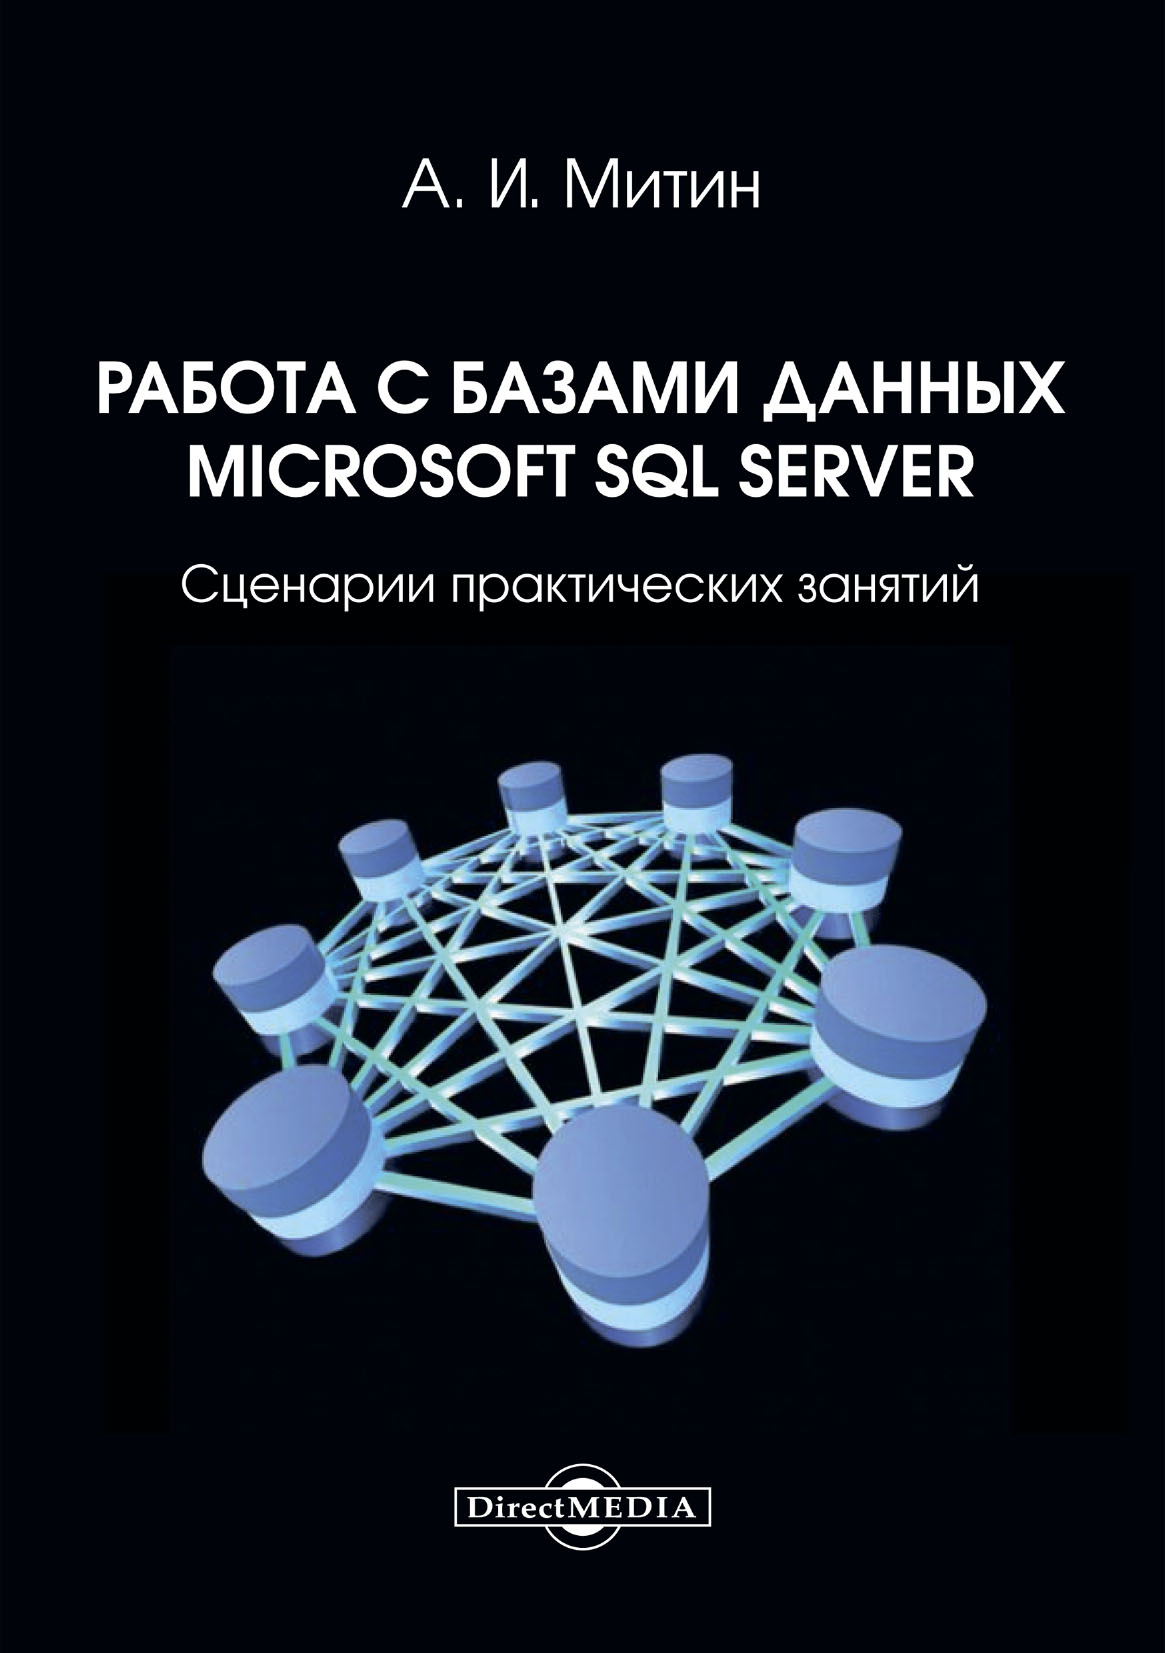 Книга  Работа с базами данных Microsoft SQL Server. Сценарии практических занятий: созданная А. И. Митин может относится к жанру базы данных, практикумы. Стоимость электронной книги Работа с базами данных Microsoft SQL Server. Сценарии практических занятий: с идентификатором 67717187 составляет 200.00 руб.